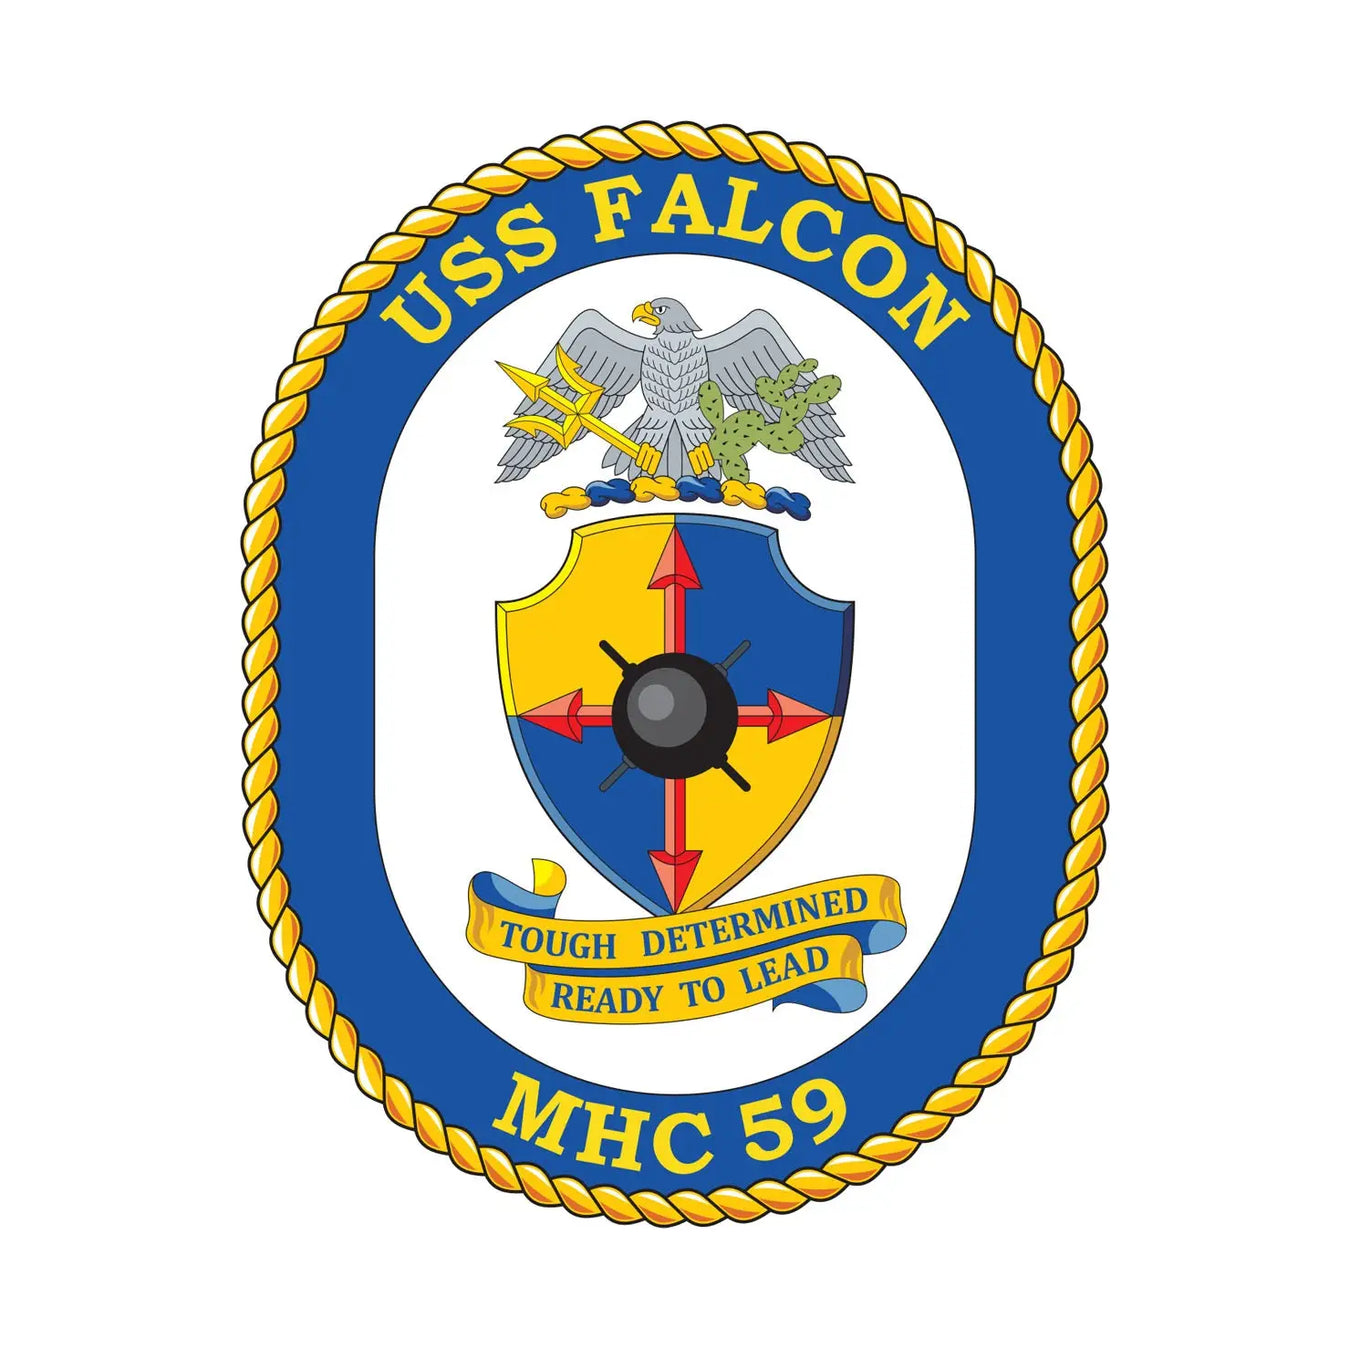 USS Falcon (MHC-59)